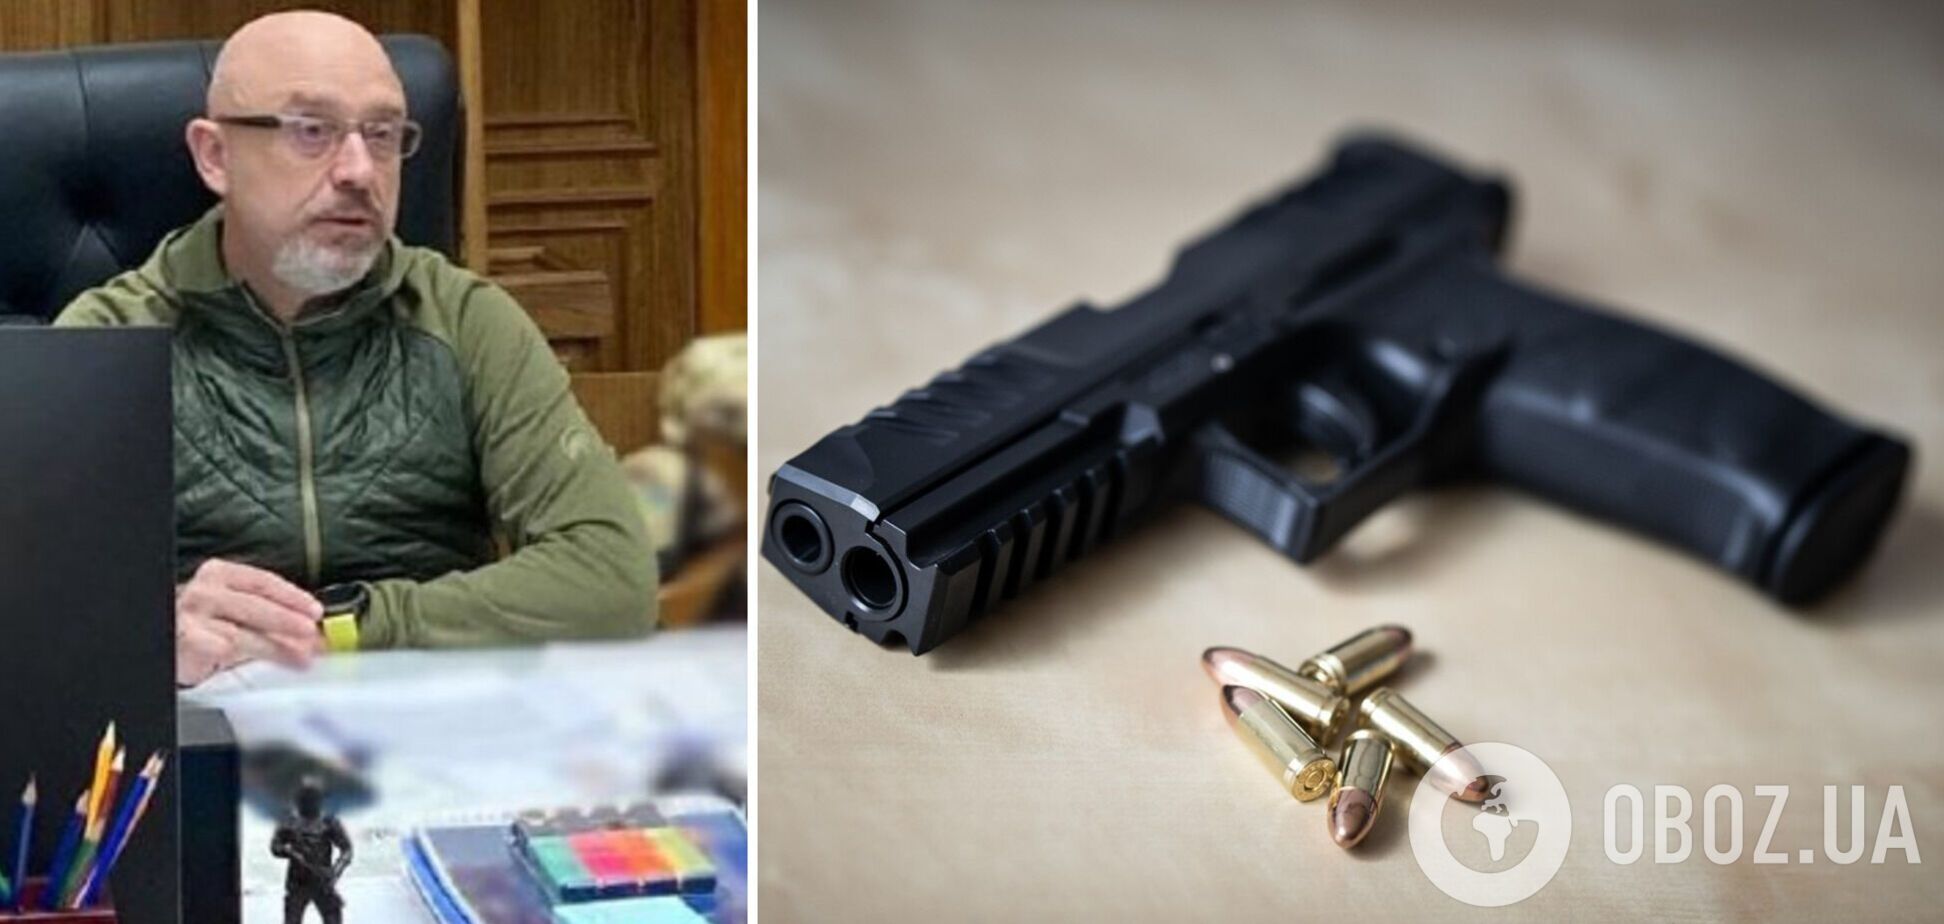 Резников поддержал легализацию оборота оружия в Украине и привел аргументы